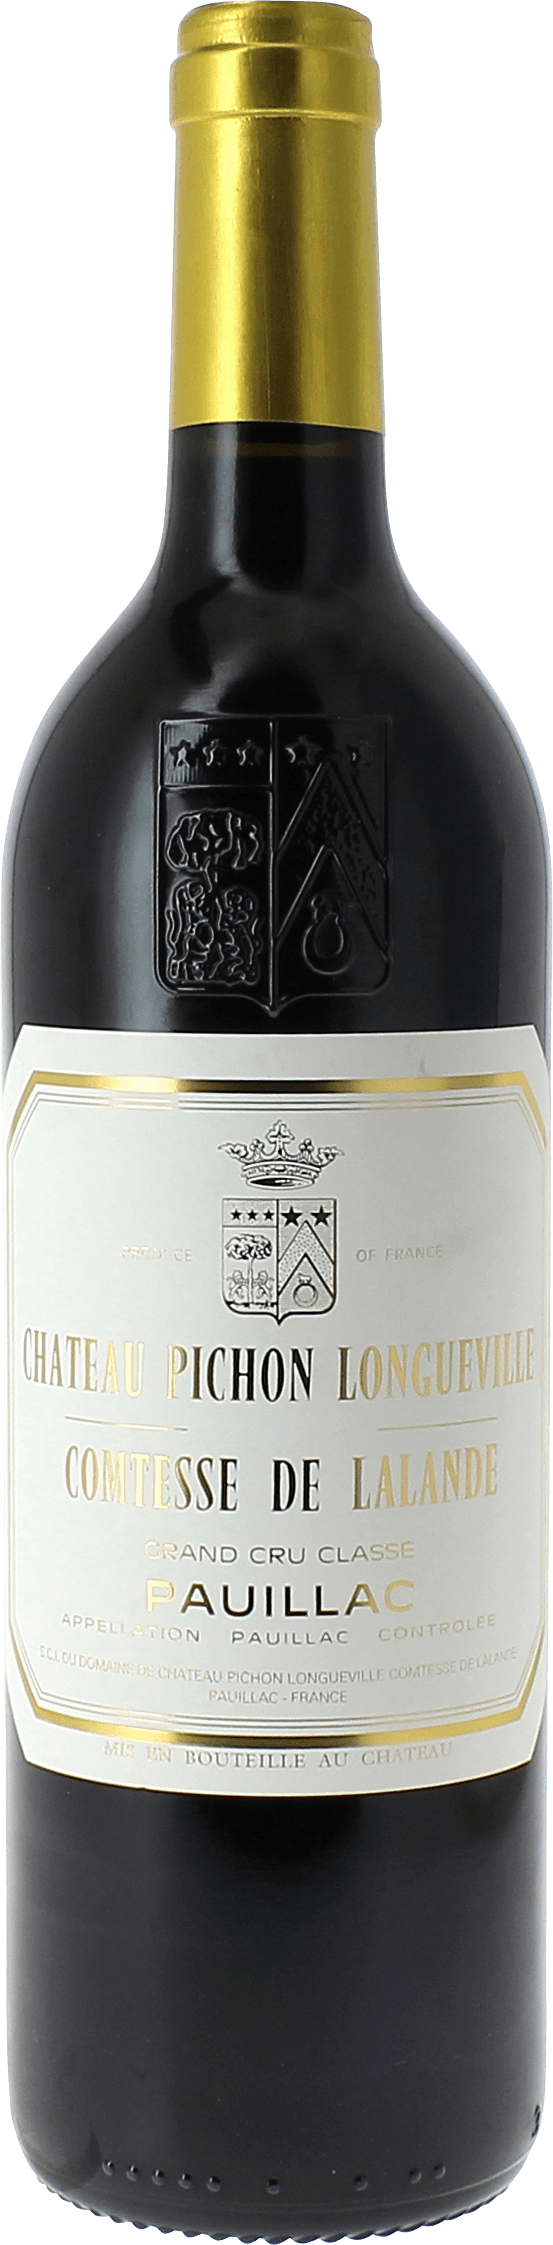 Pichon comtesse de lalande 1996 2me Grand cru class Pauillac, Bordeaux rouge